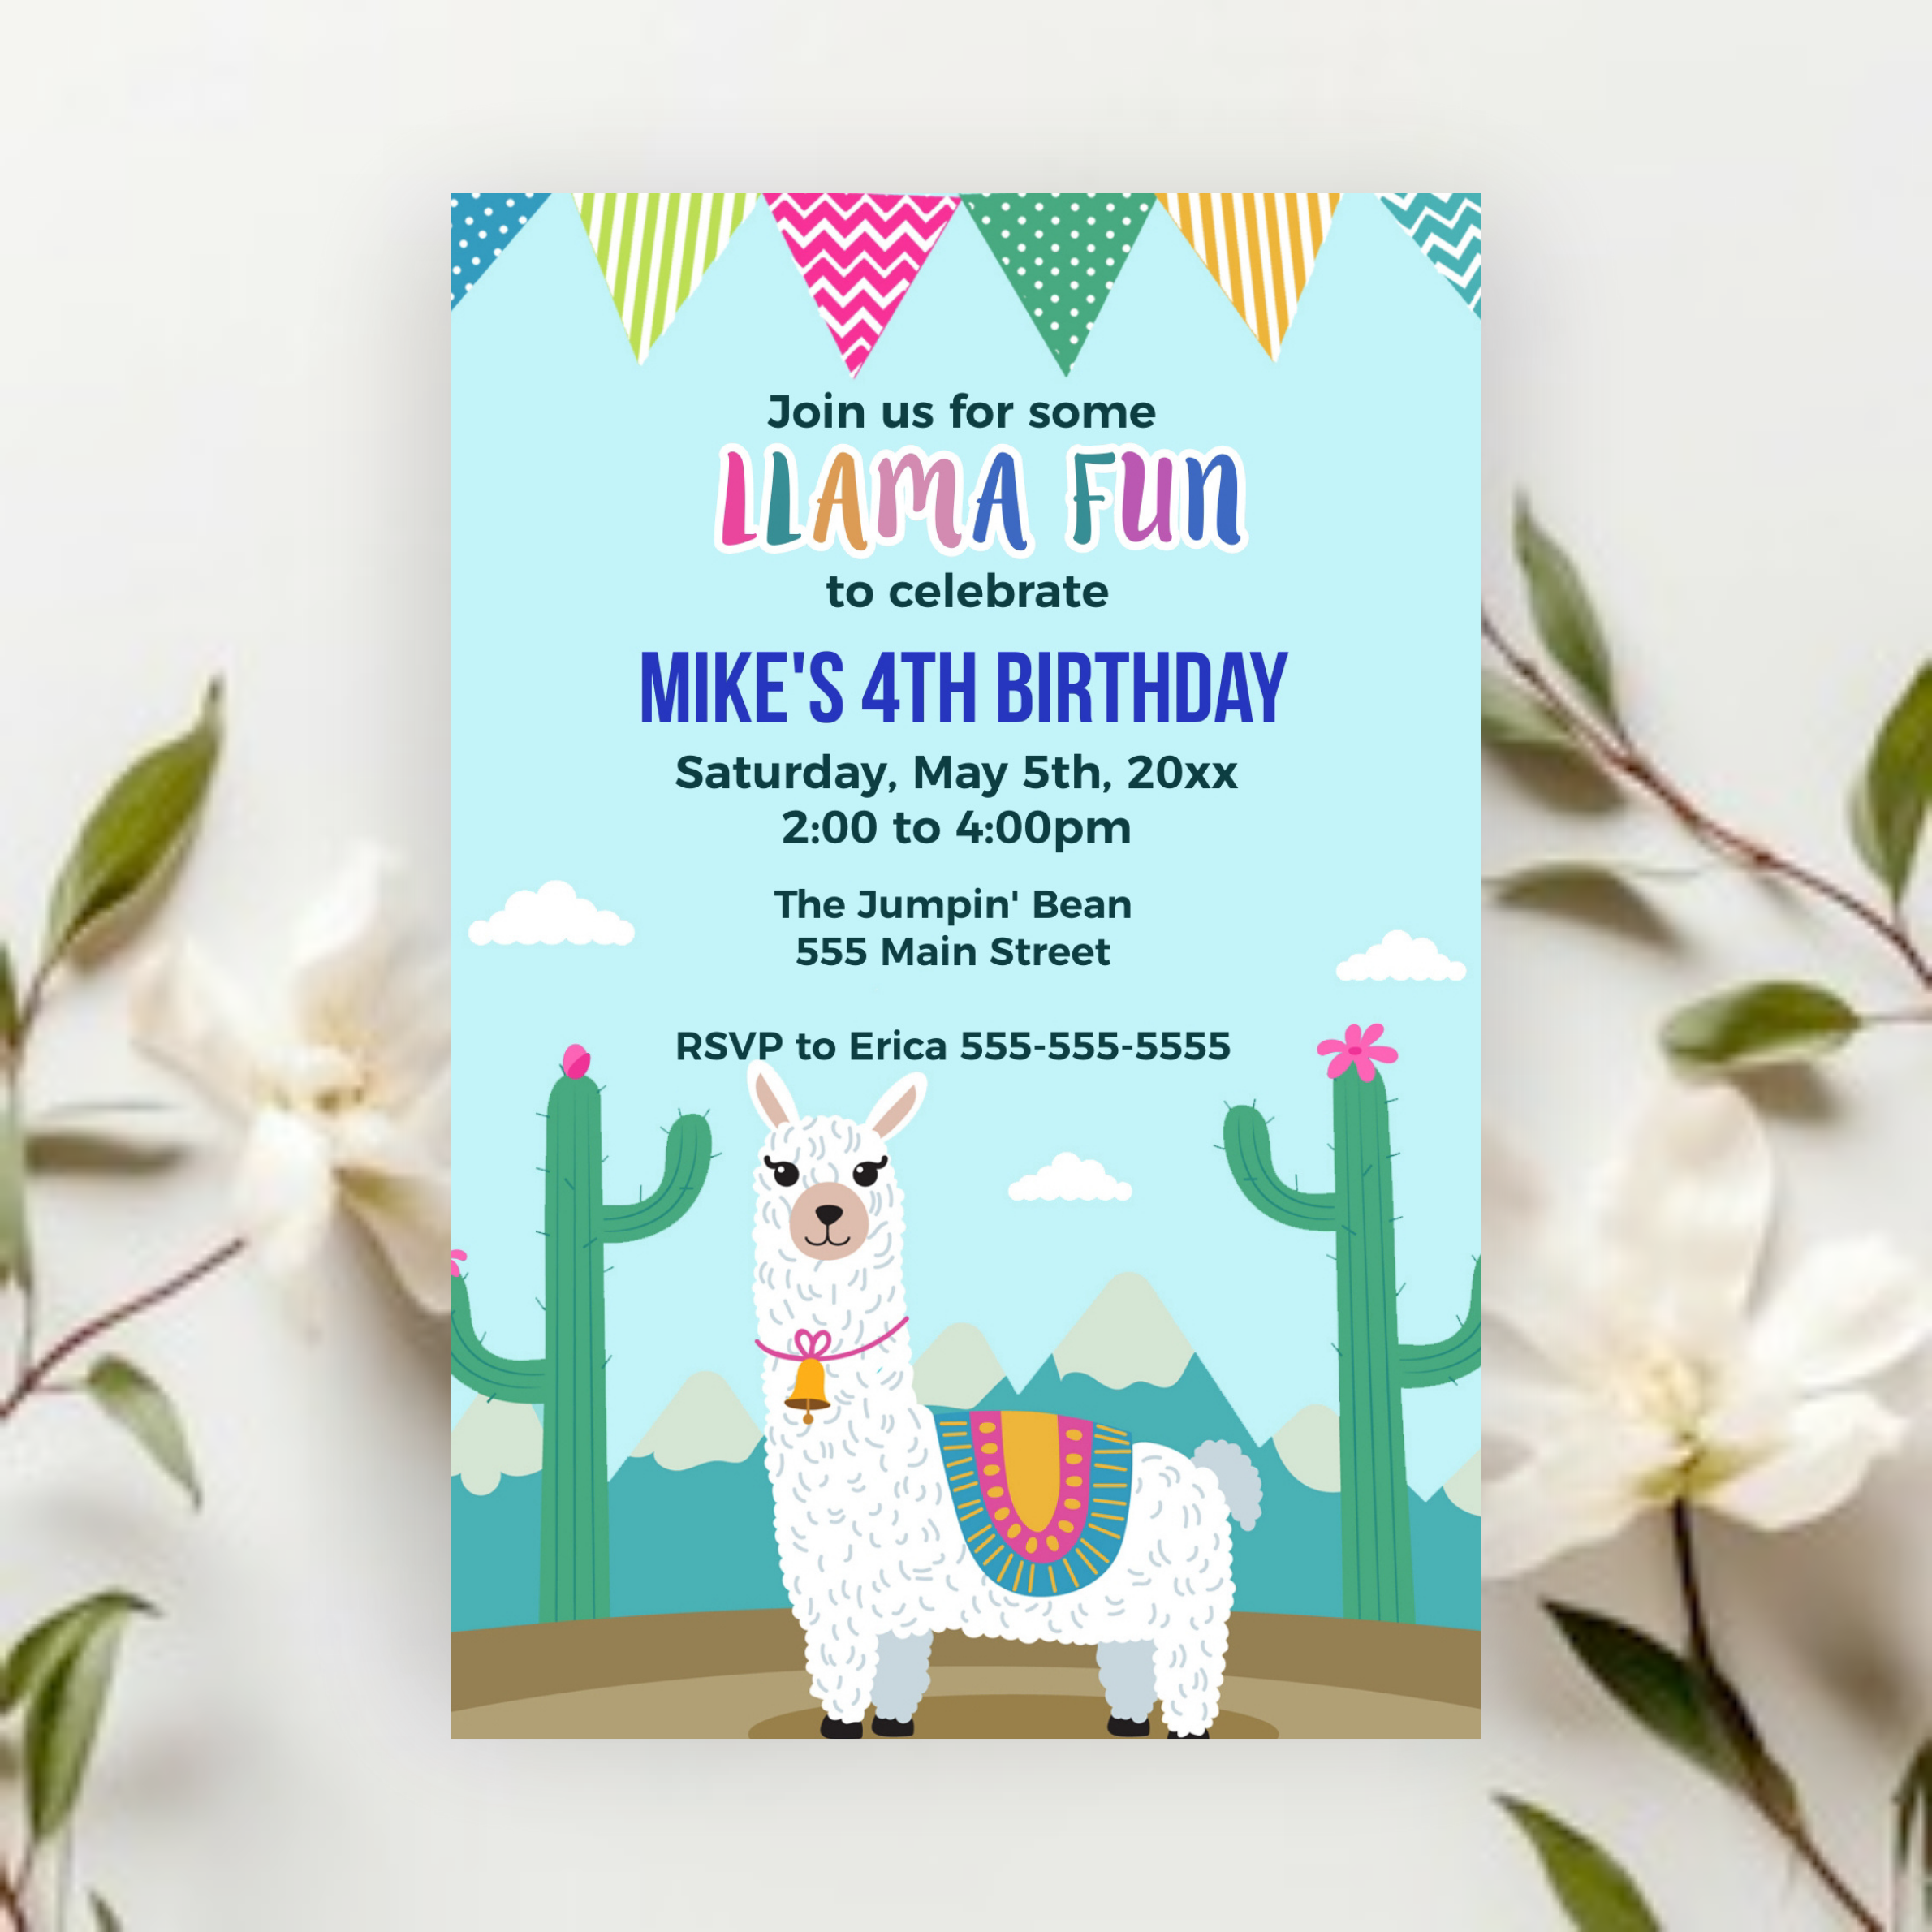 Alpaca Fun Invitation for Kids